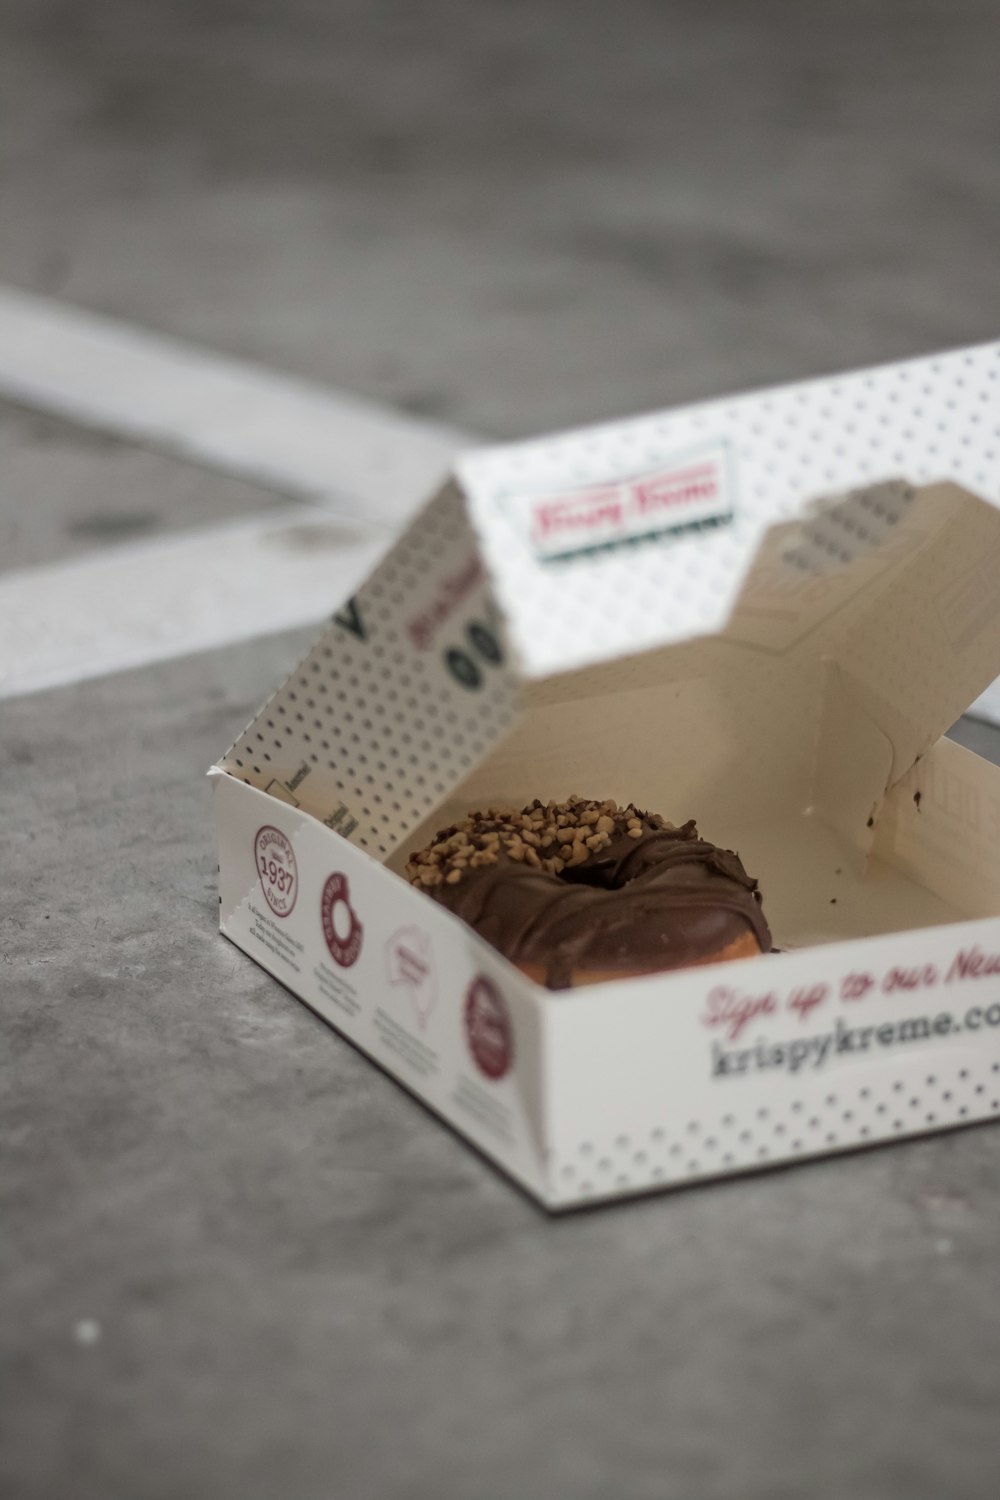 초콜릿으로 덮인 크리스피 크림 도넛 상자